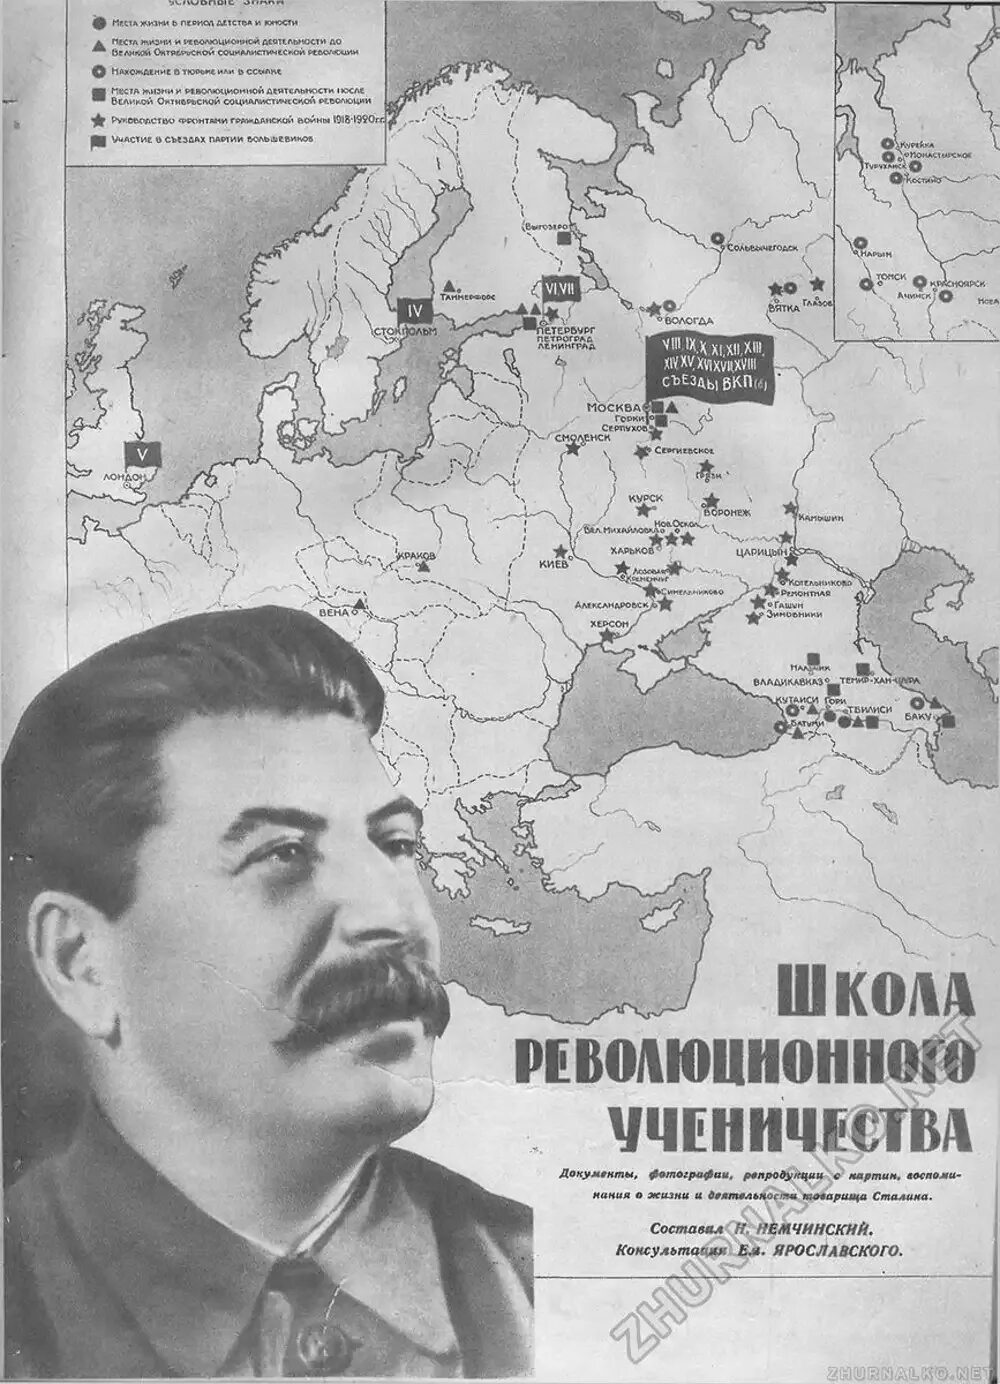 Сталин 1917. Иосиф Сталин в 1917 году. Сталин 1939. Революционная деятельность до 1917 года Сталин.